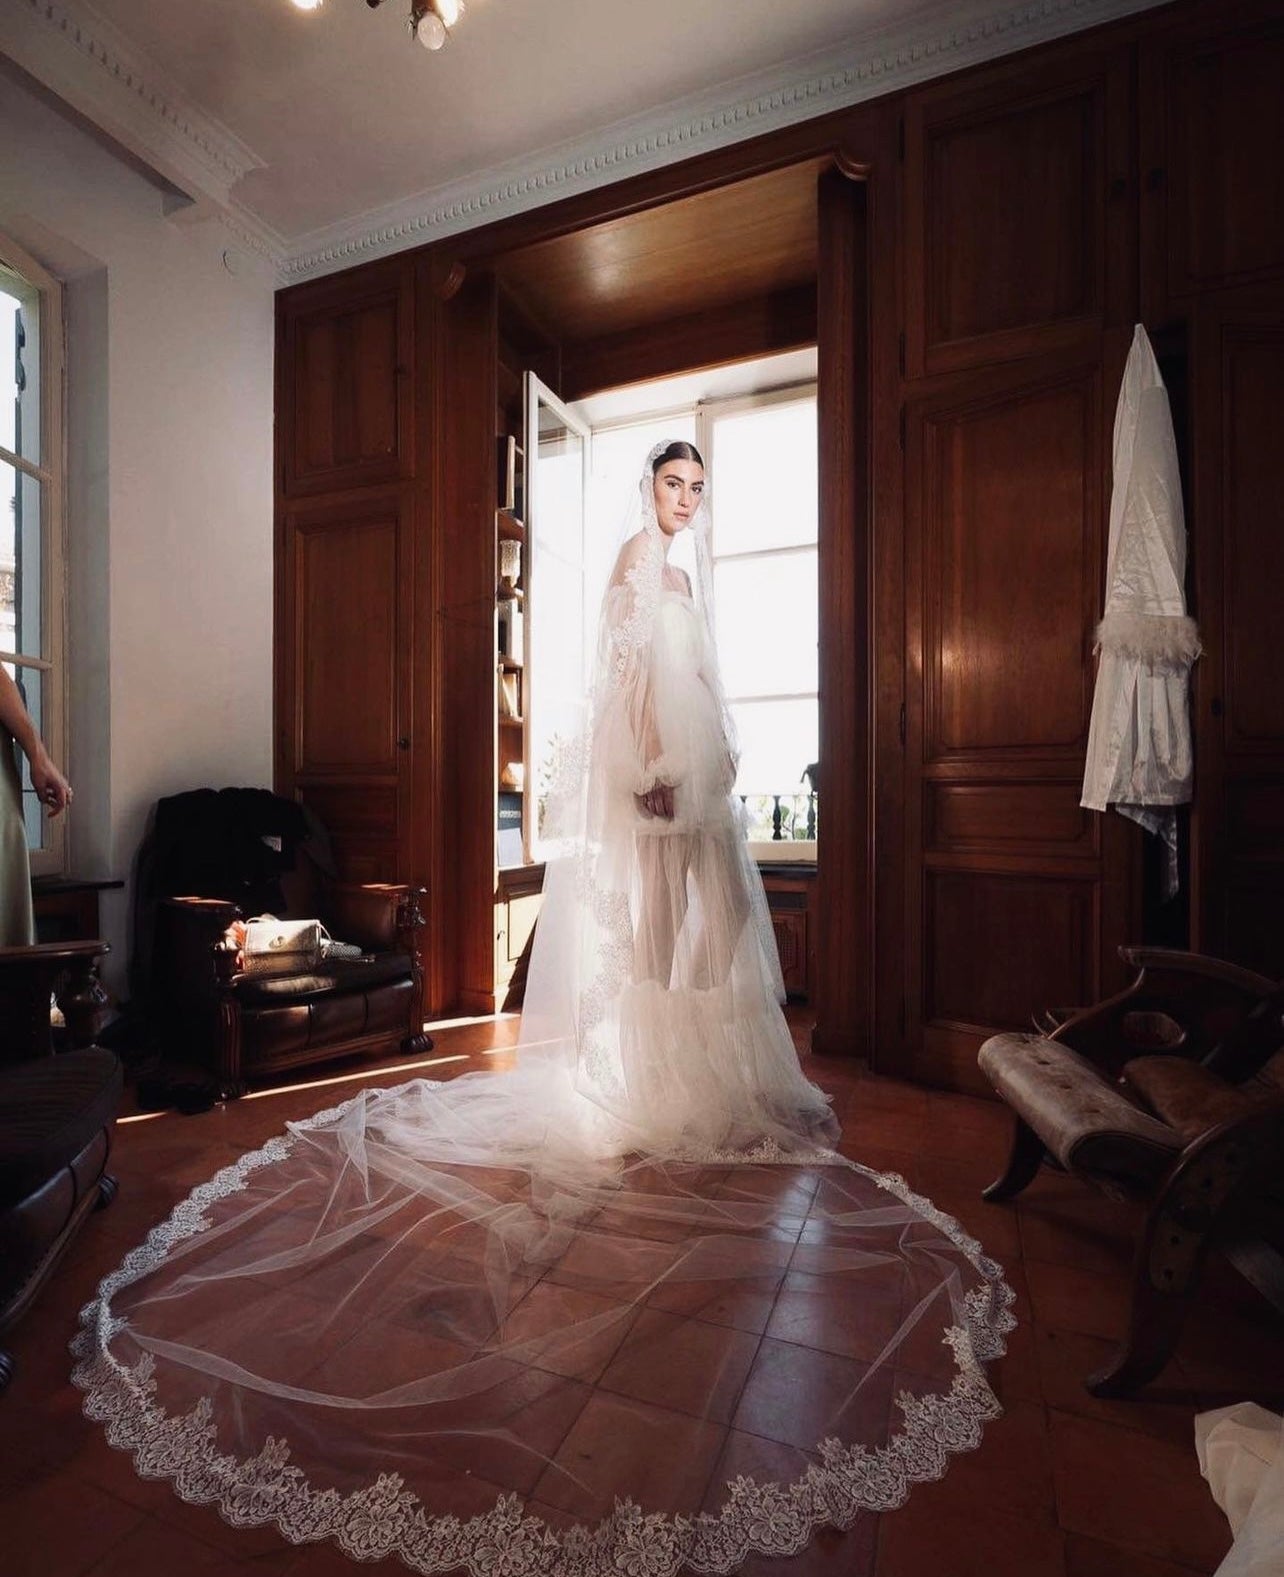 The Viktorya wedding dress